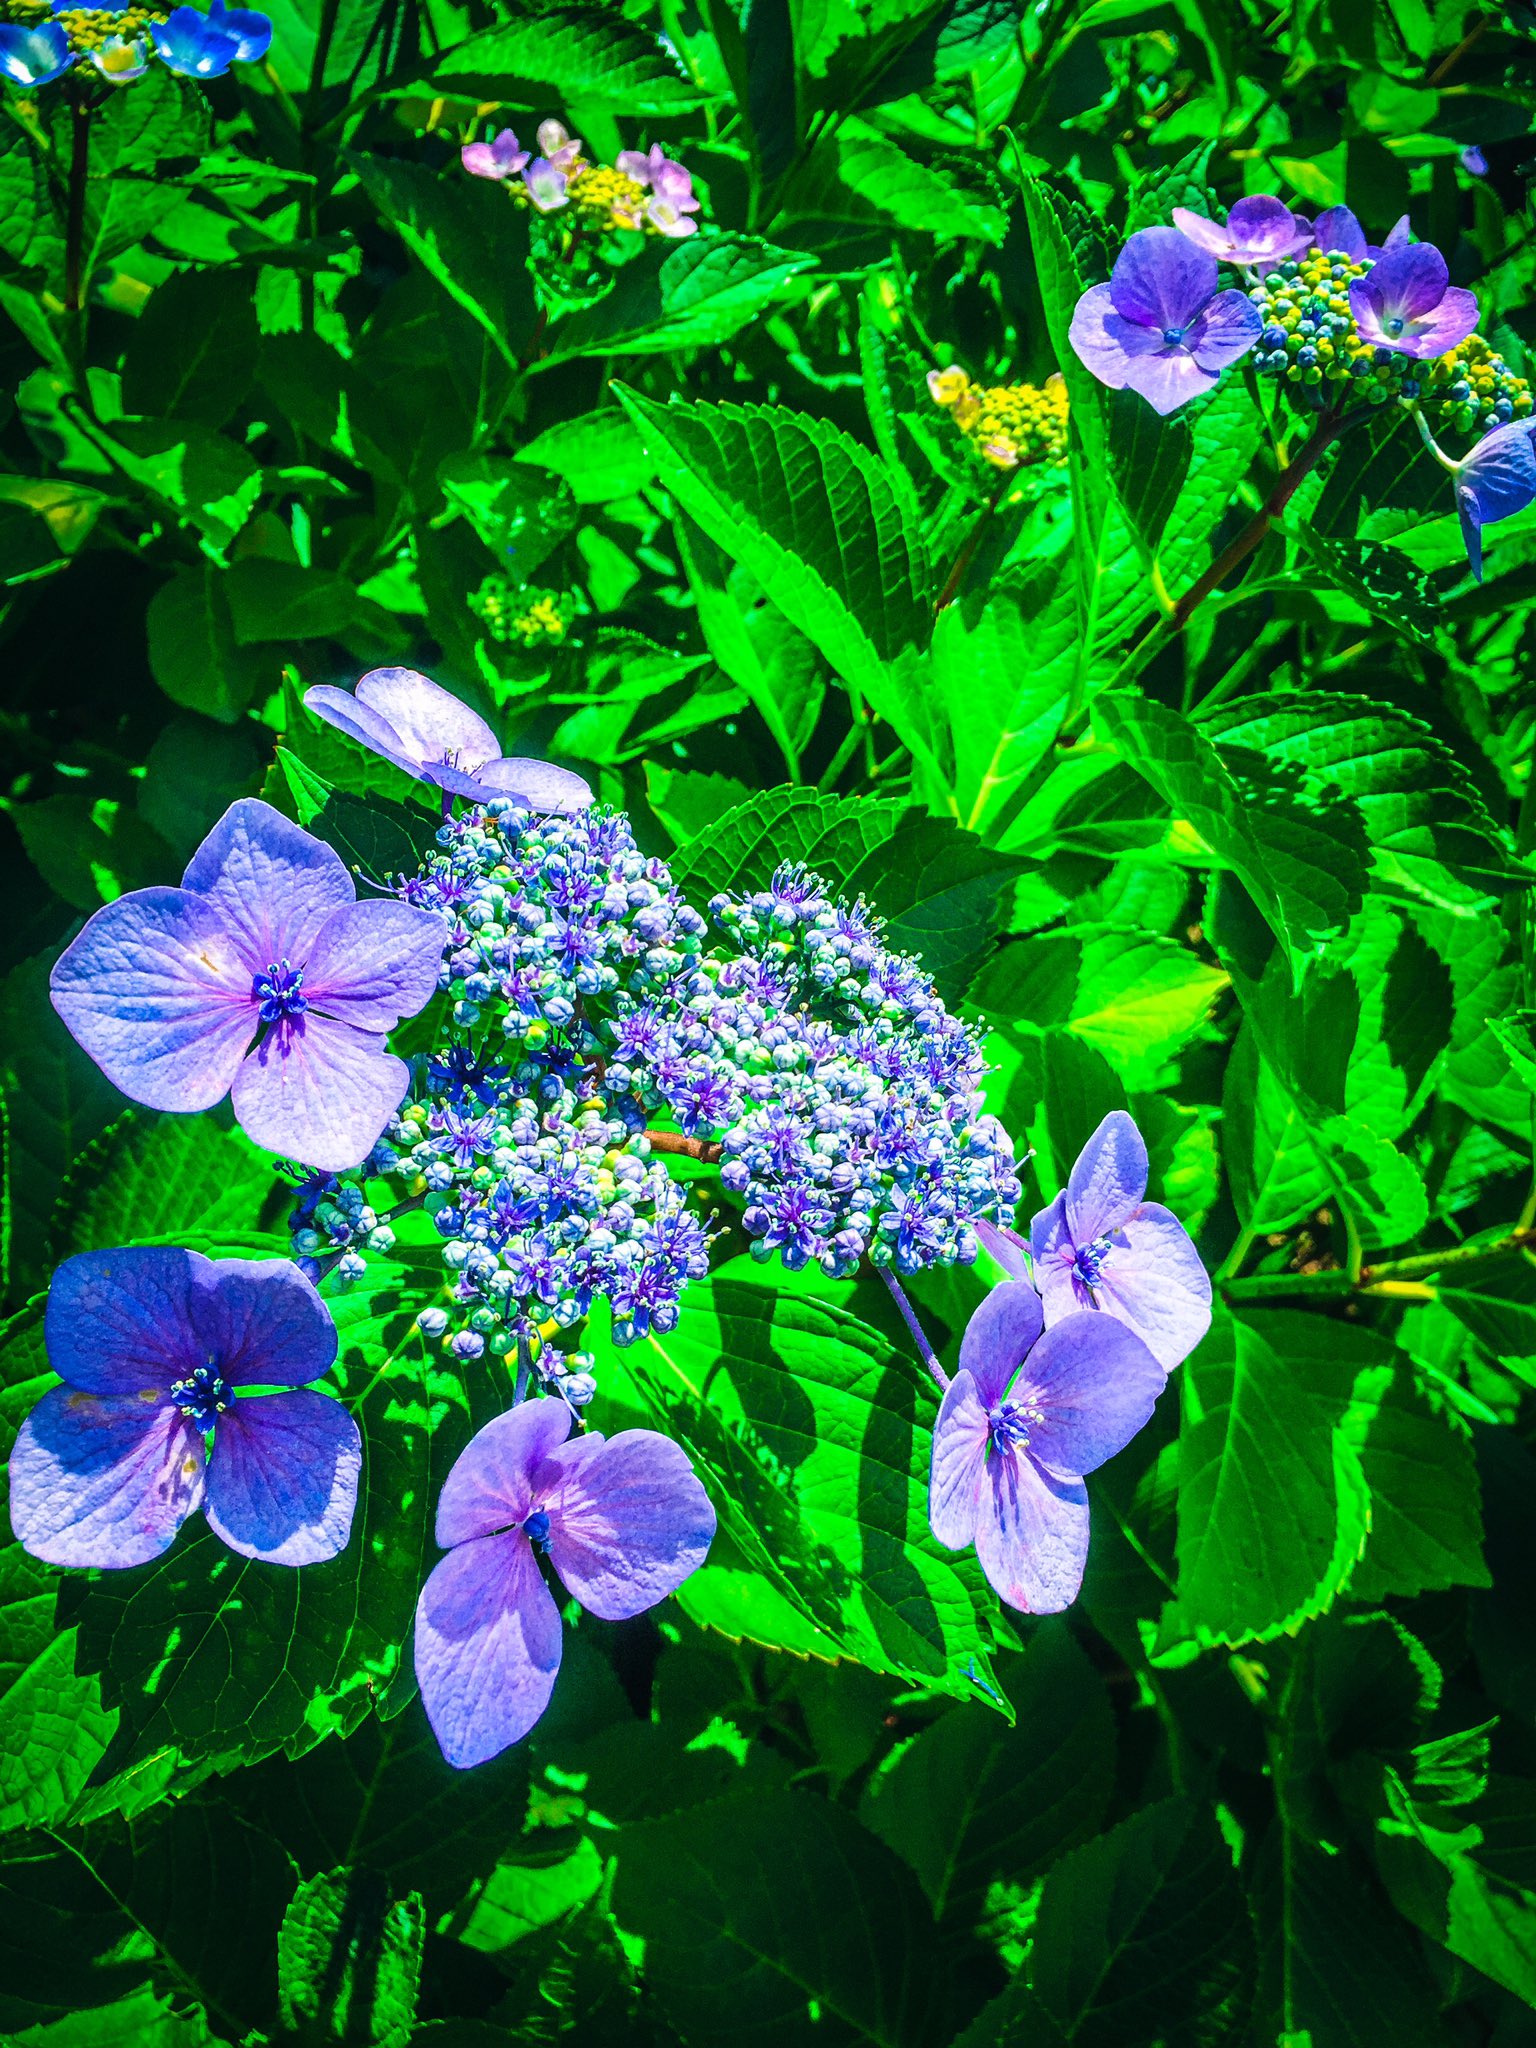 アしや 芦谷 耕平 紫陽花の小さな花が咲いてましたね 英語でhydrangeaと言うそうですが 語源は古代ギリシア語の Hydro ヒュードル 水の Angea 小さな器 と云う意味だそうです 梅雨時期に咲く 水の器 なかなか洒落てます Tokyo Hydrangea